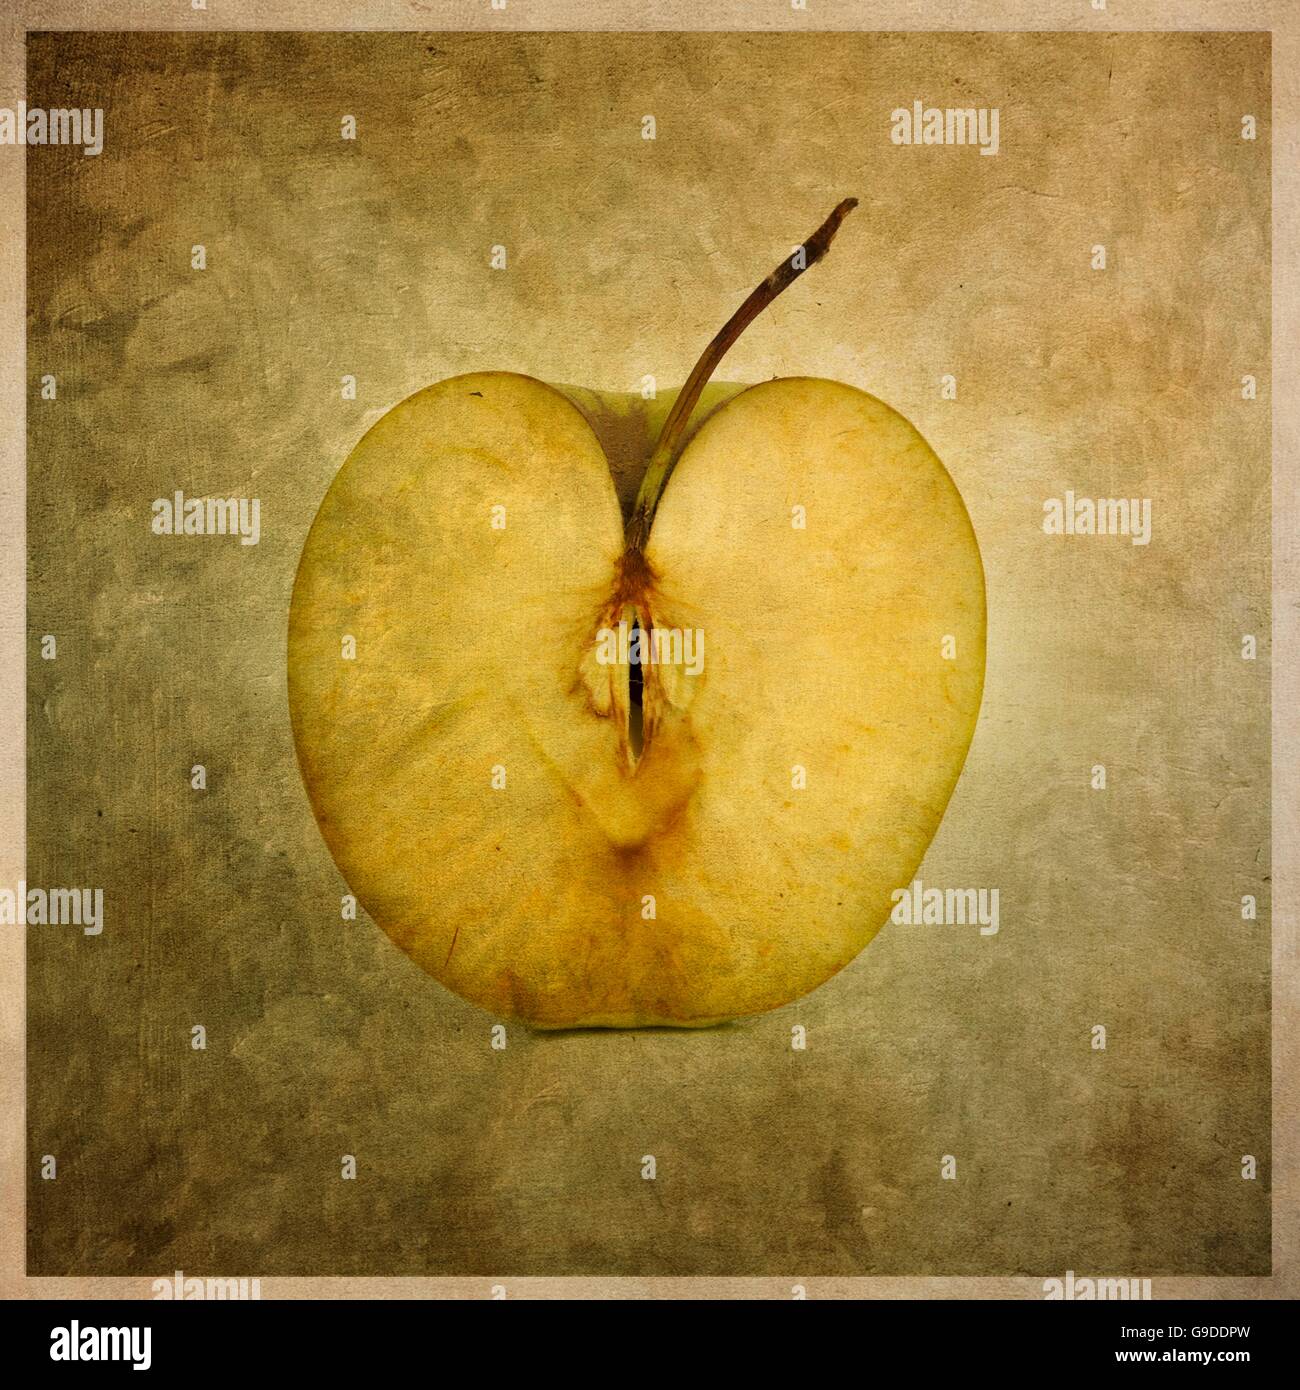 Illustration of an apple halve Stock Photo